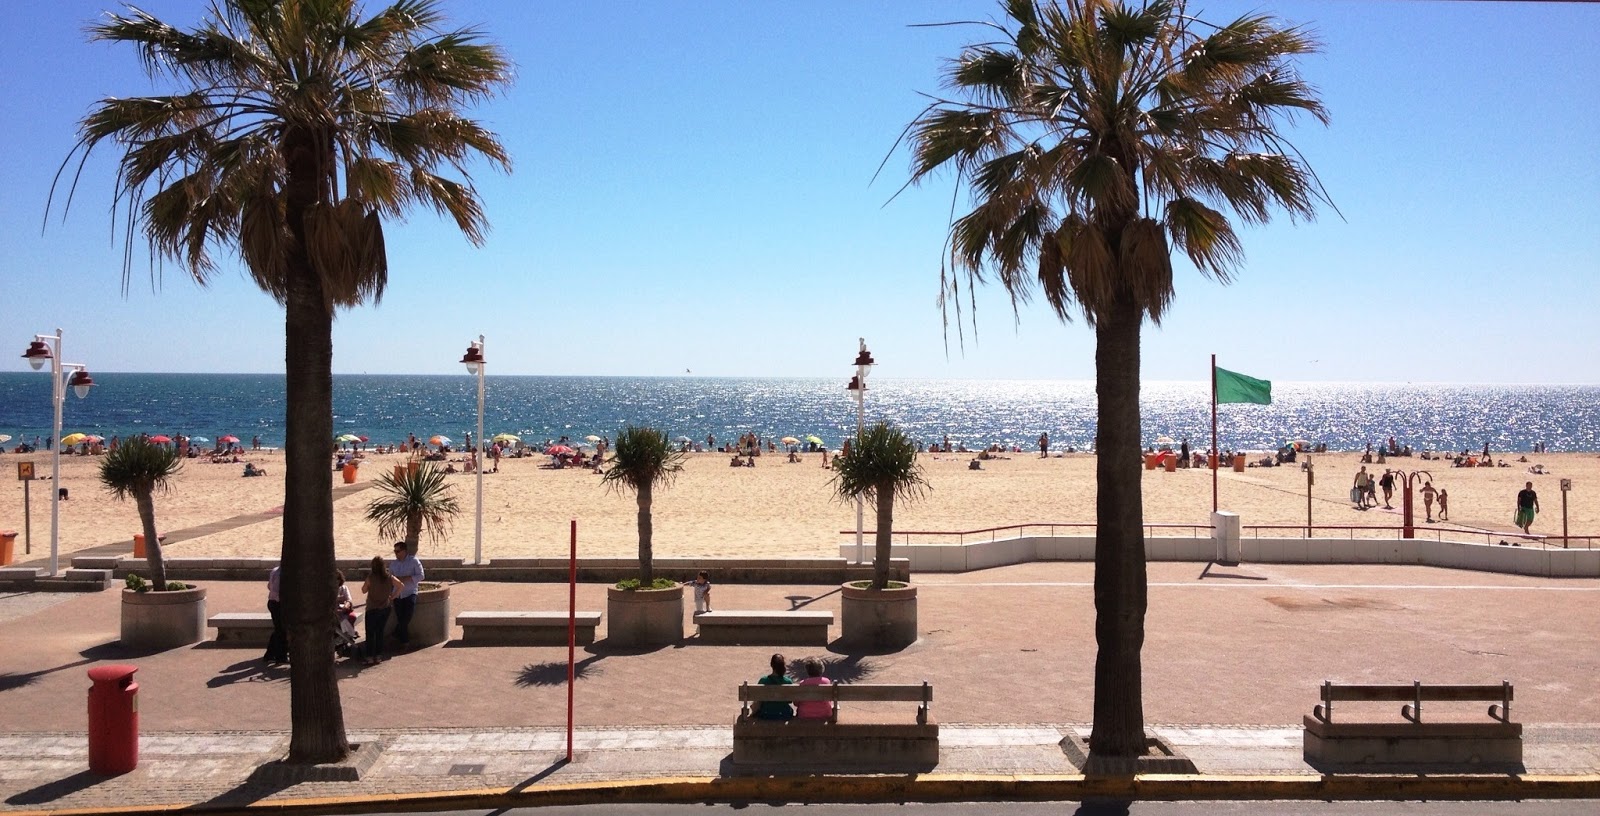 Playa Santa Maria del Mar'in fotoğrafı geniş ile birlikte